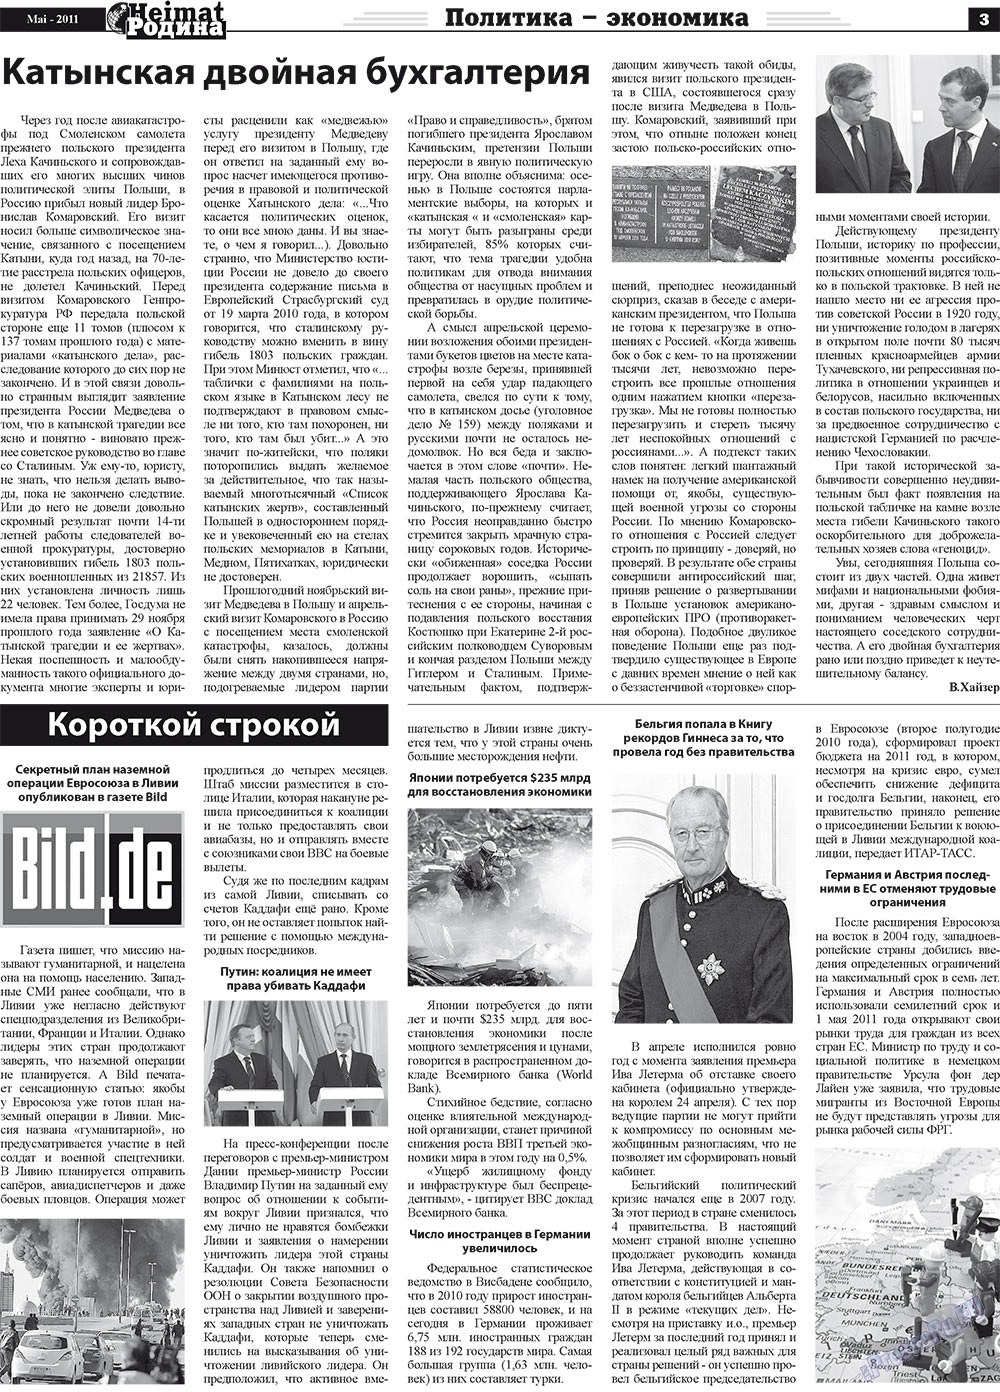 Heimat-Родина (газета). 2011 год, номер 5, стр. 3